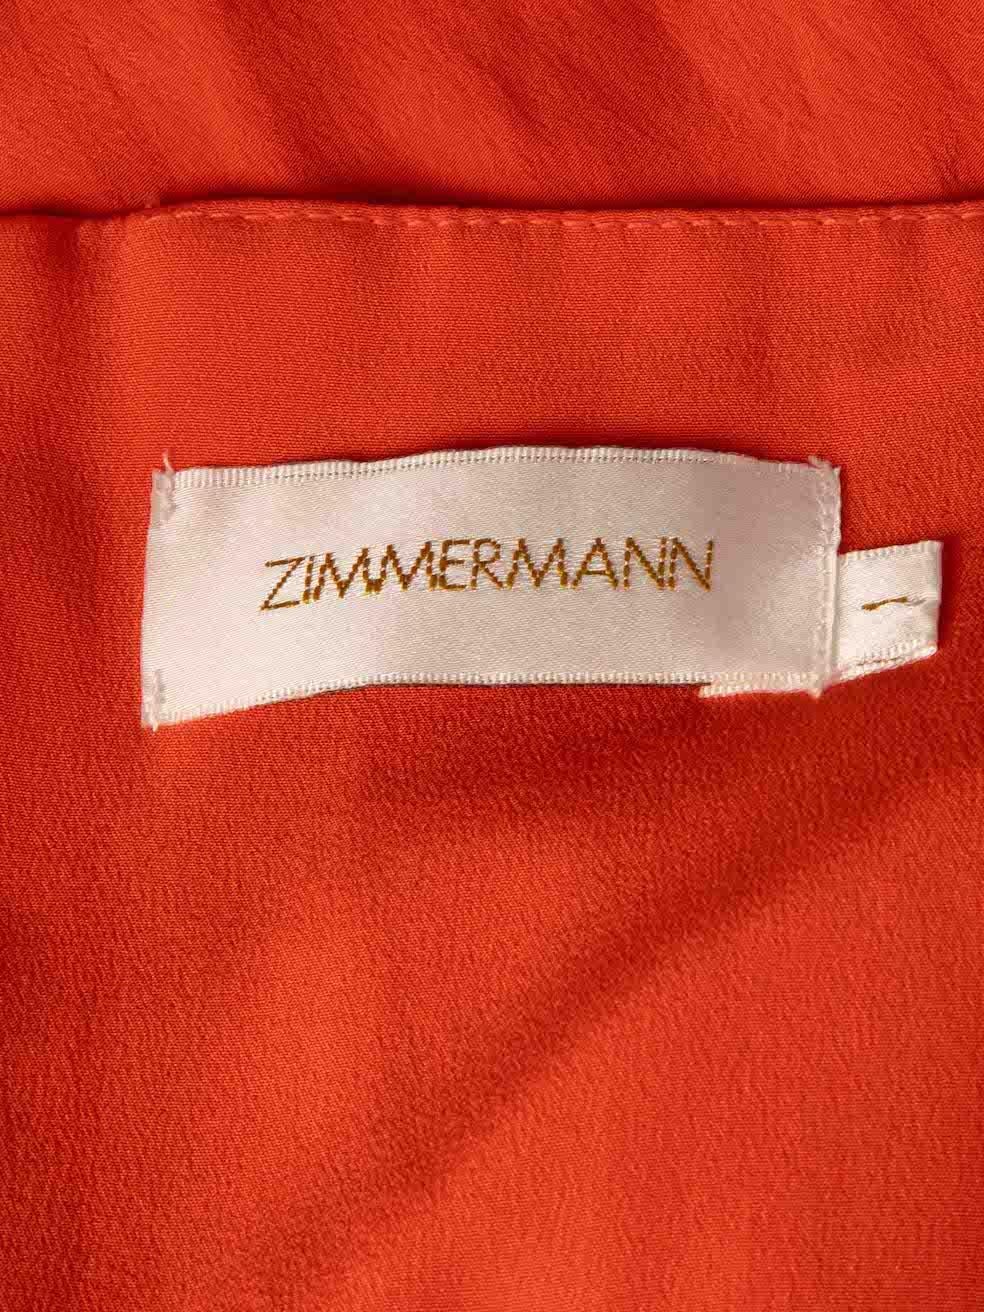 Orange Silk Soiree Drape Mini Dress Size M In Good Condition For Sale In London, GB